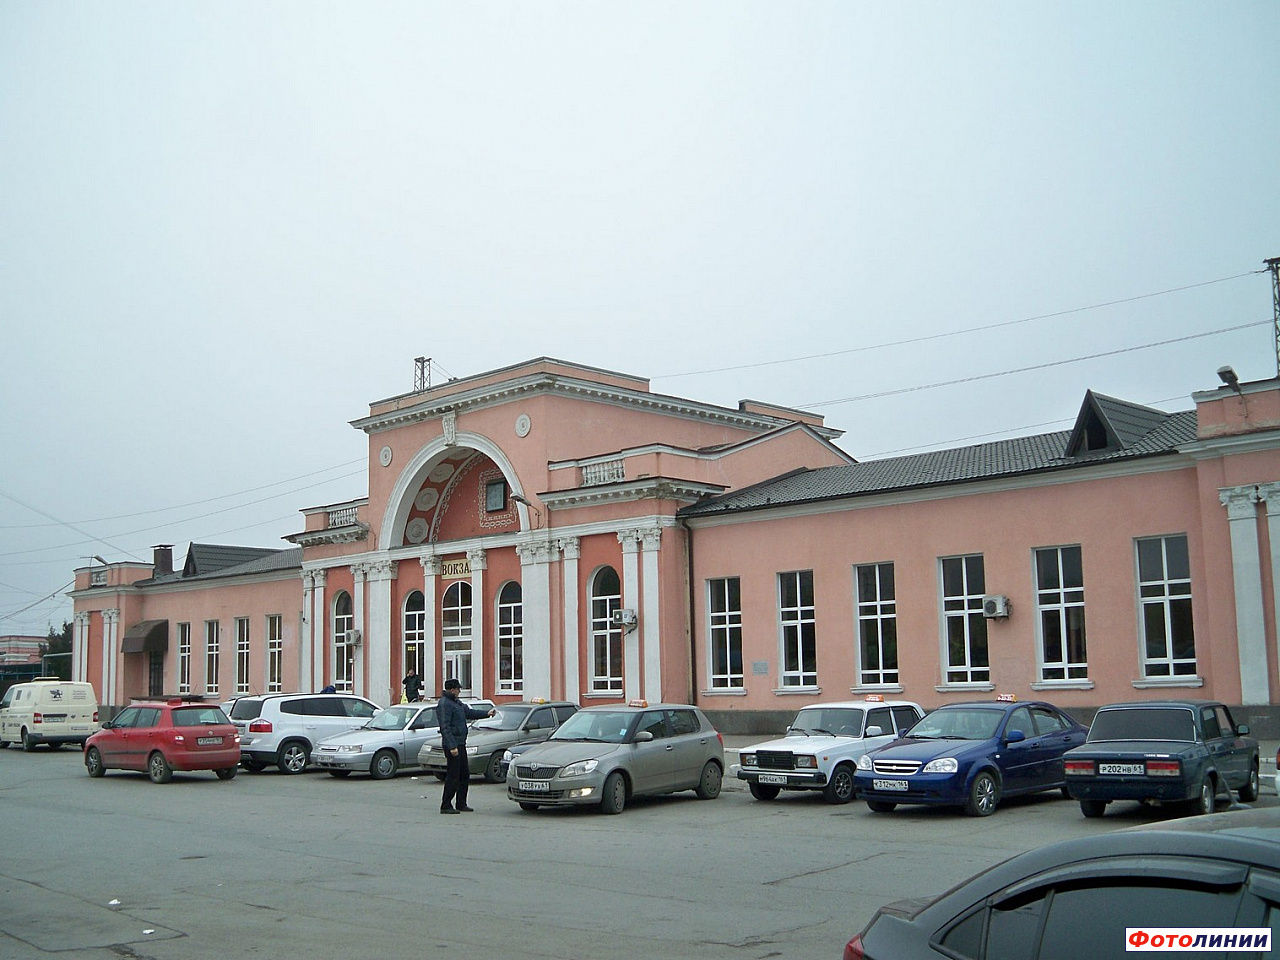 Вид на вокзал с обратной стороны